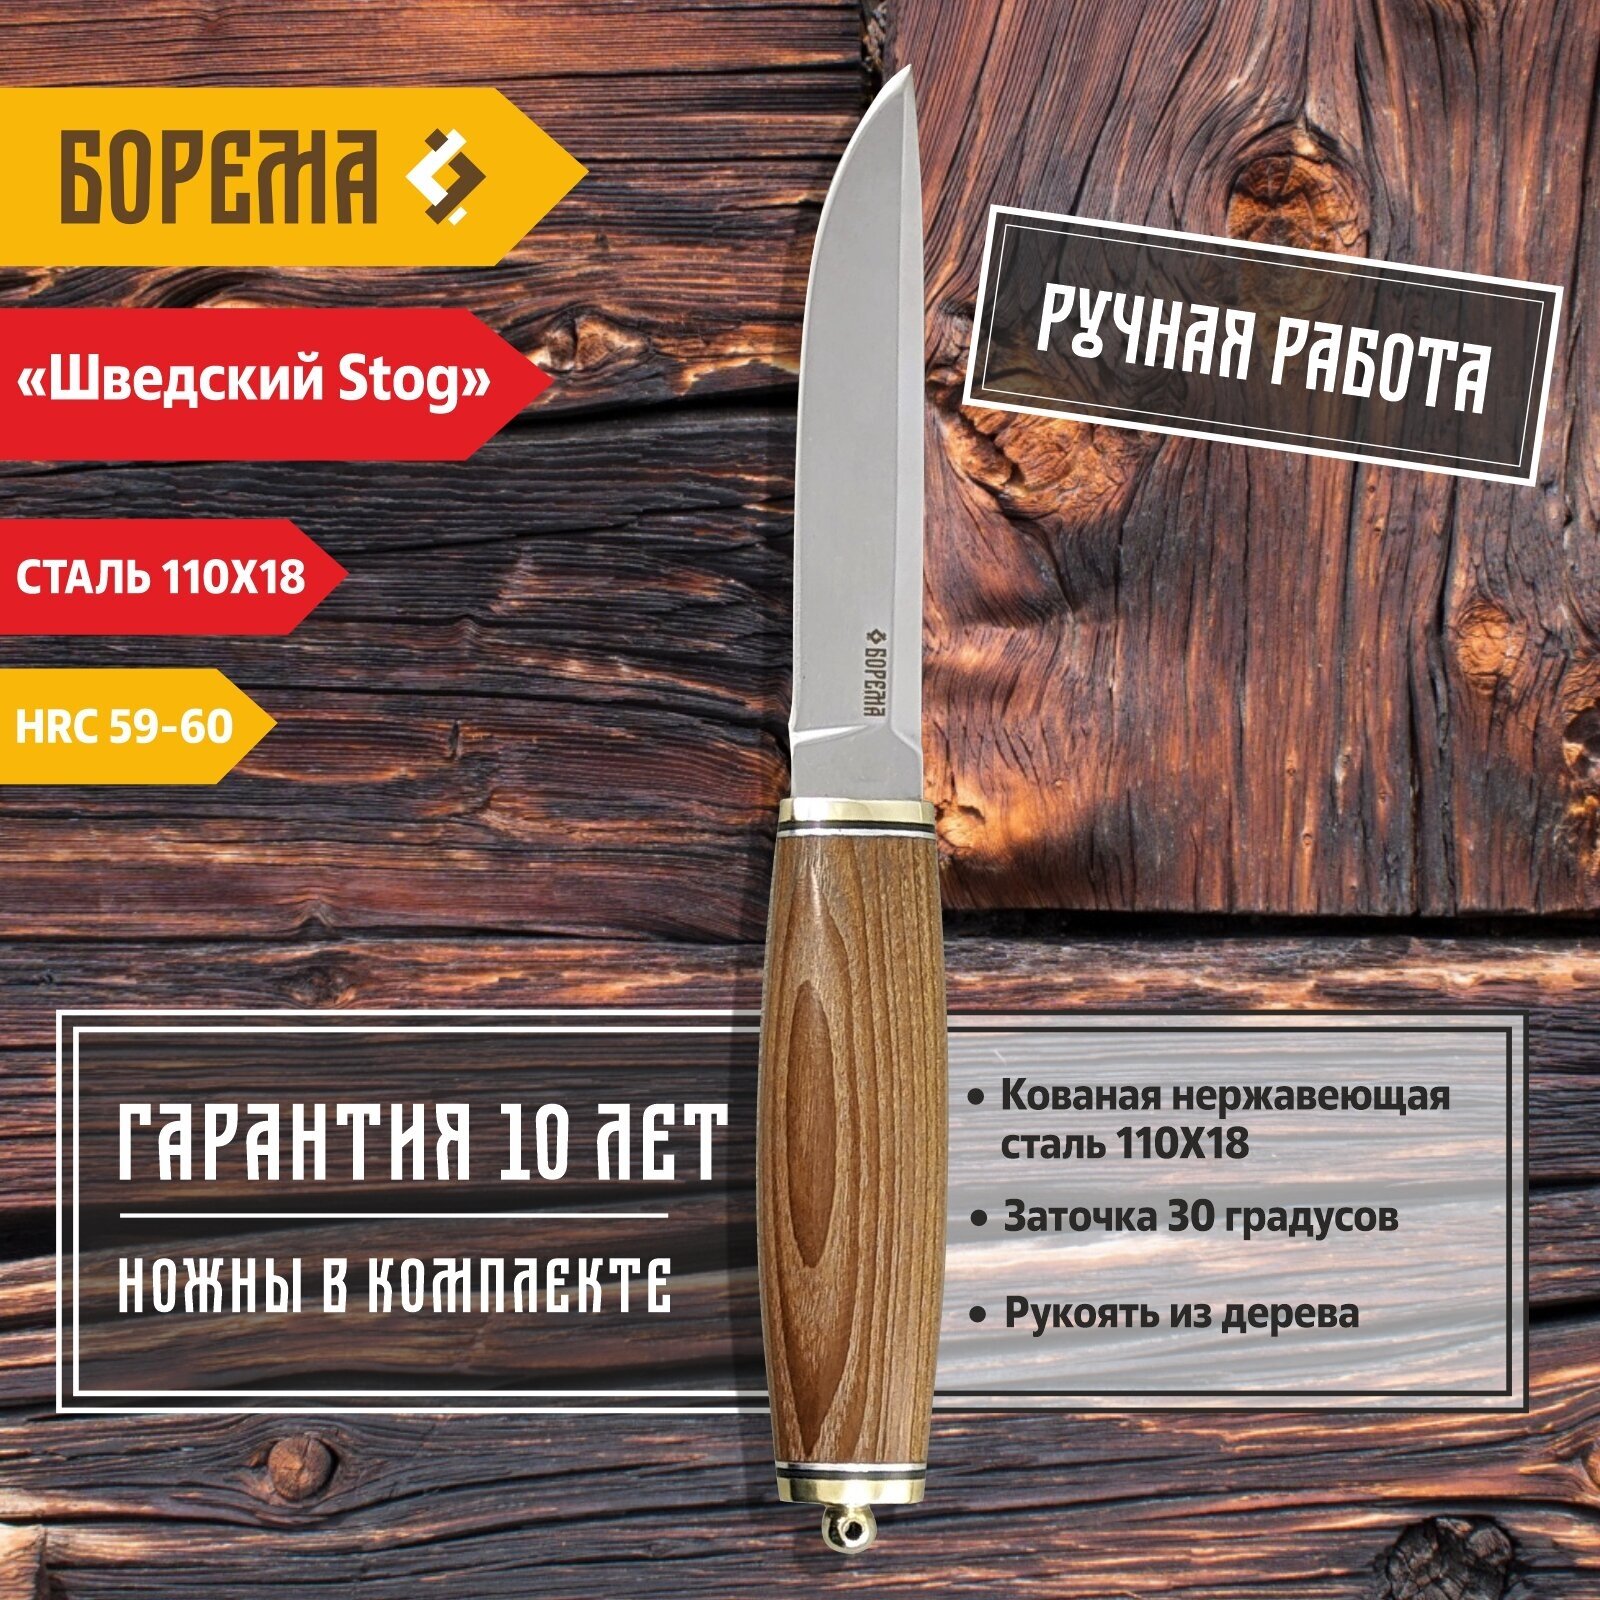 Охотничий нож фиксированный Борема "Шведский Stog", длина лезвия 13.5 см, кованая сталь 110Х18, нож туристический, нож ручной работы